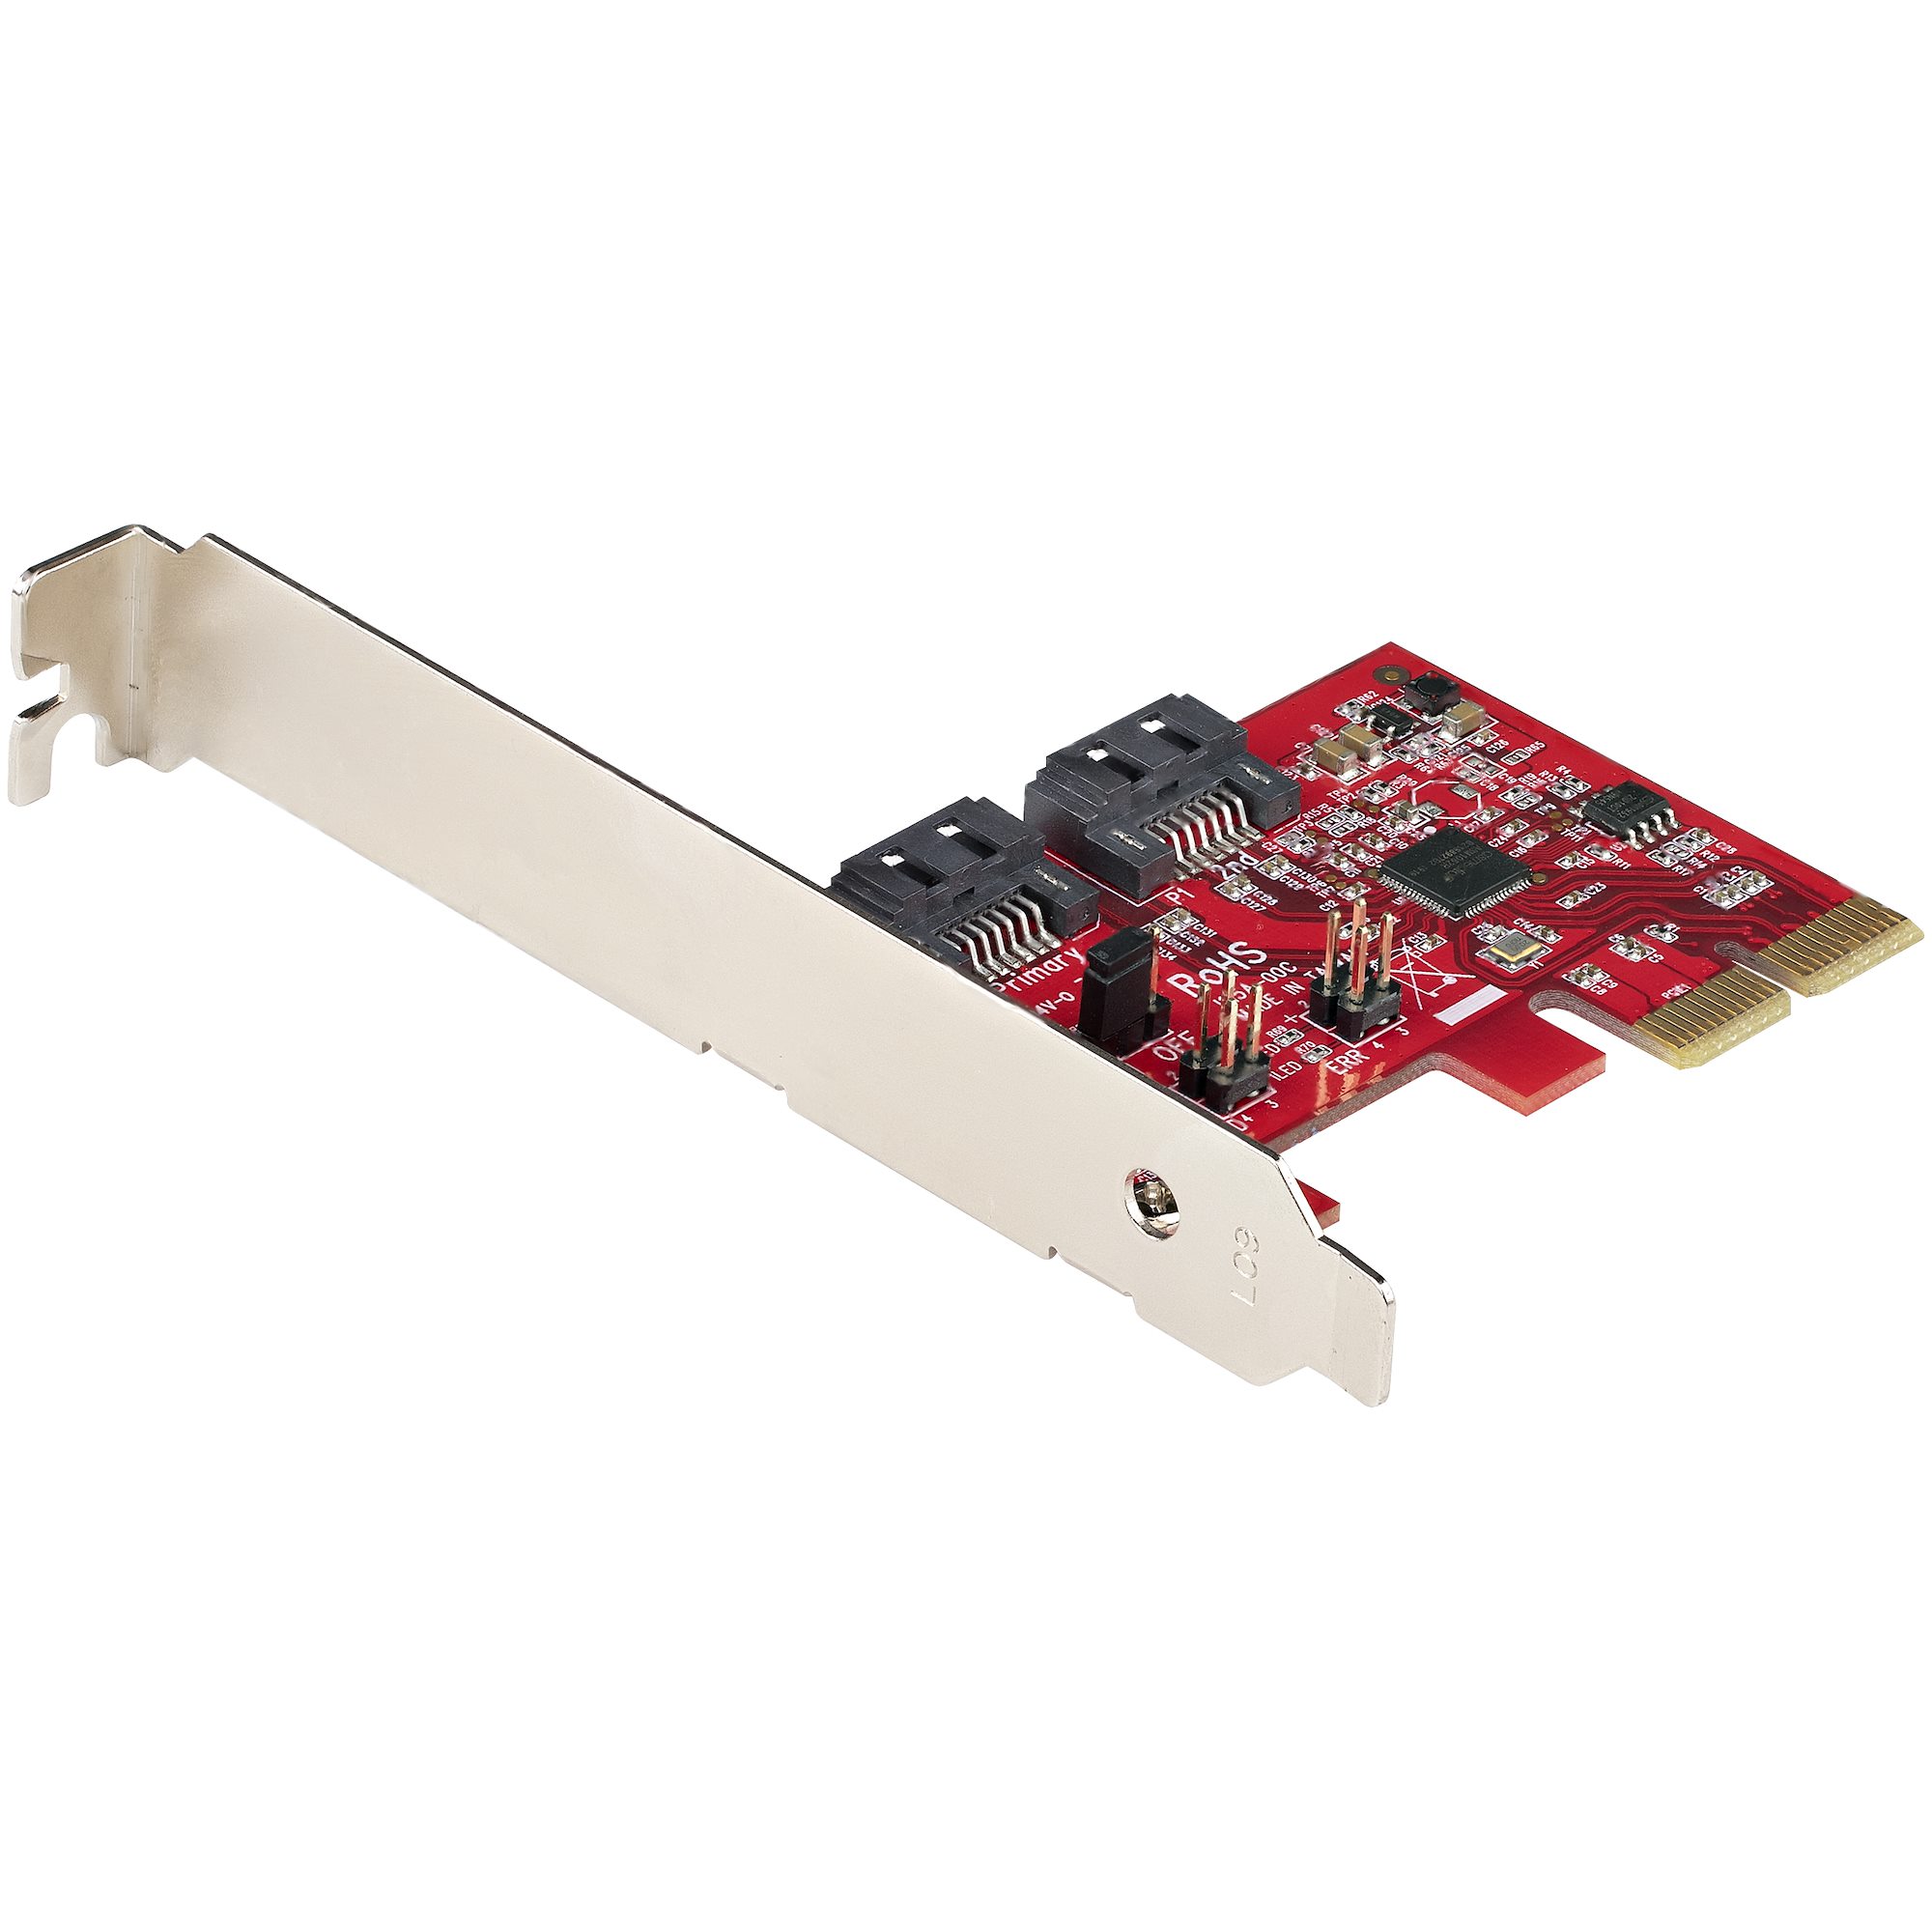 【2P6GR-PCIE-SATA-CARD】SATA III RAID PCIE CARD 2PT